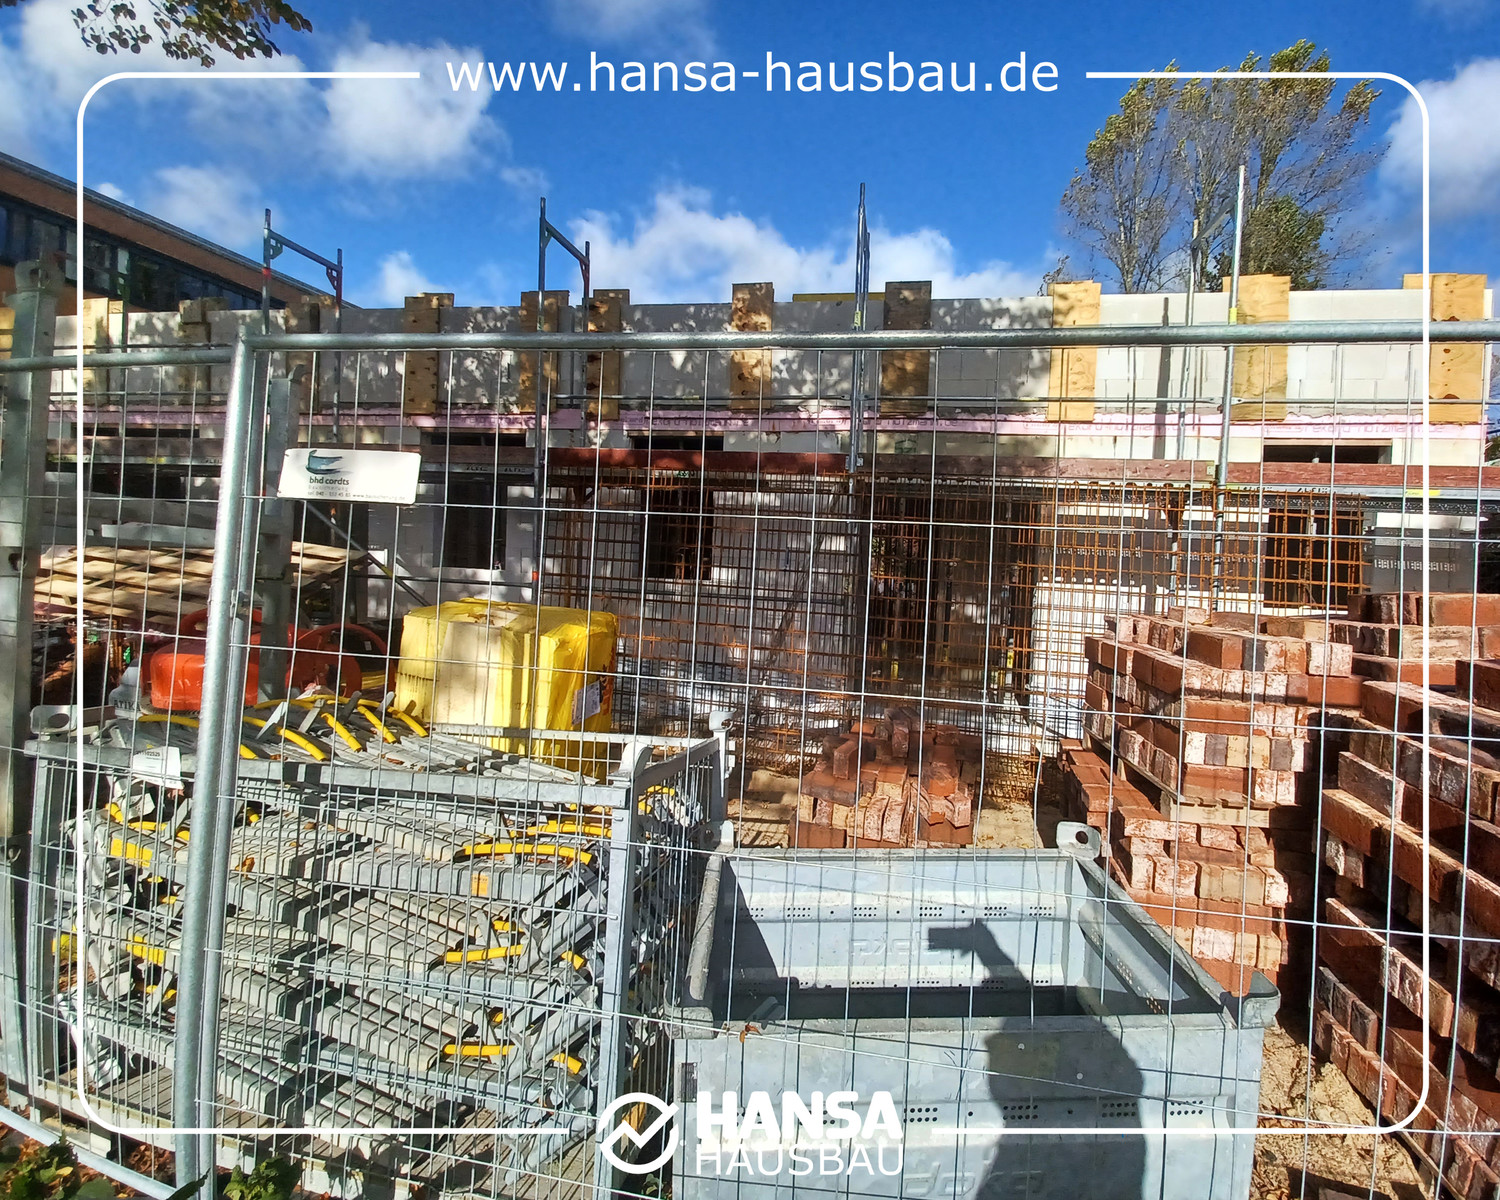 Hansa Hausbau Drempel Neubau Hanburg 02